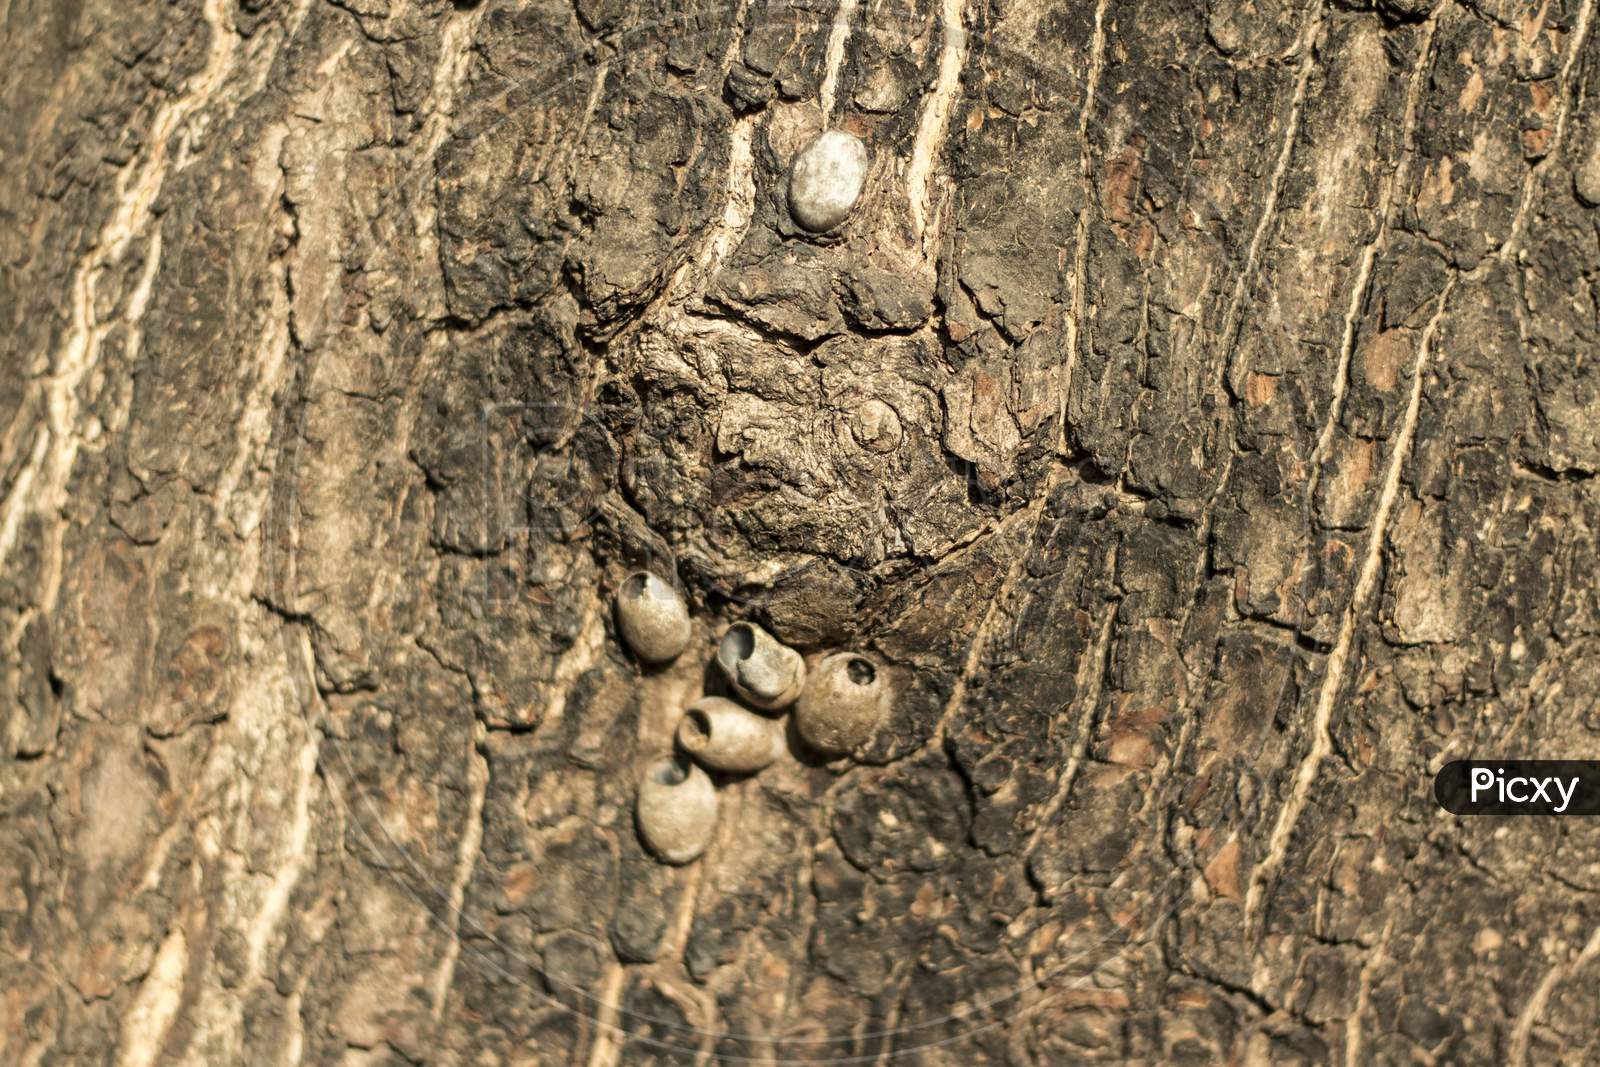 small egg on tree body